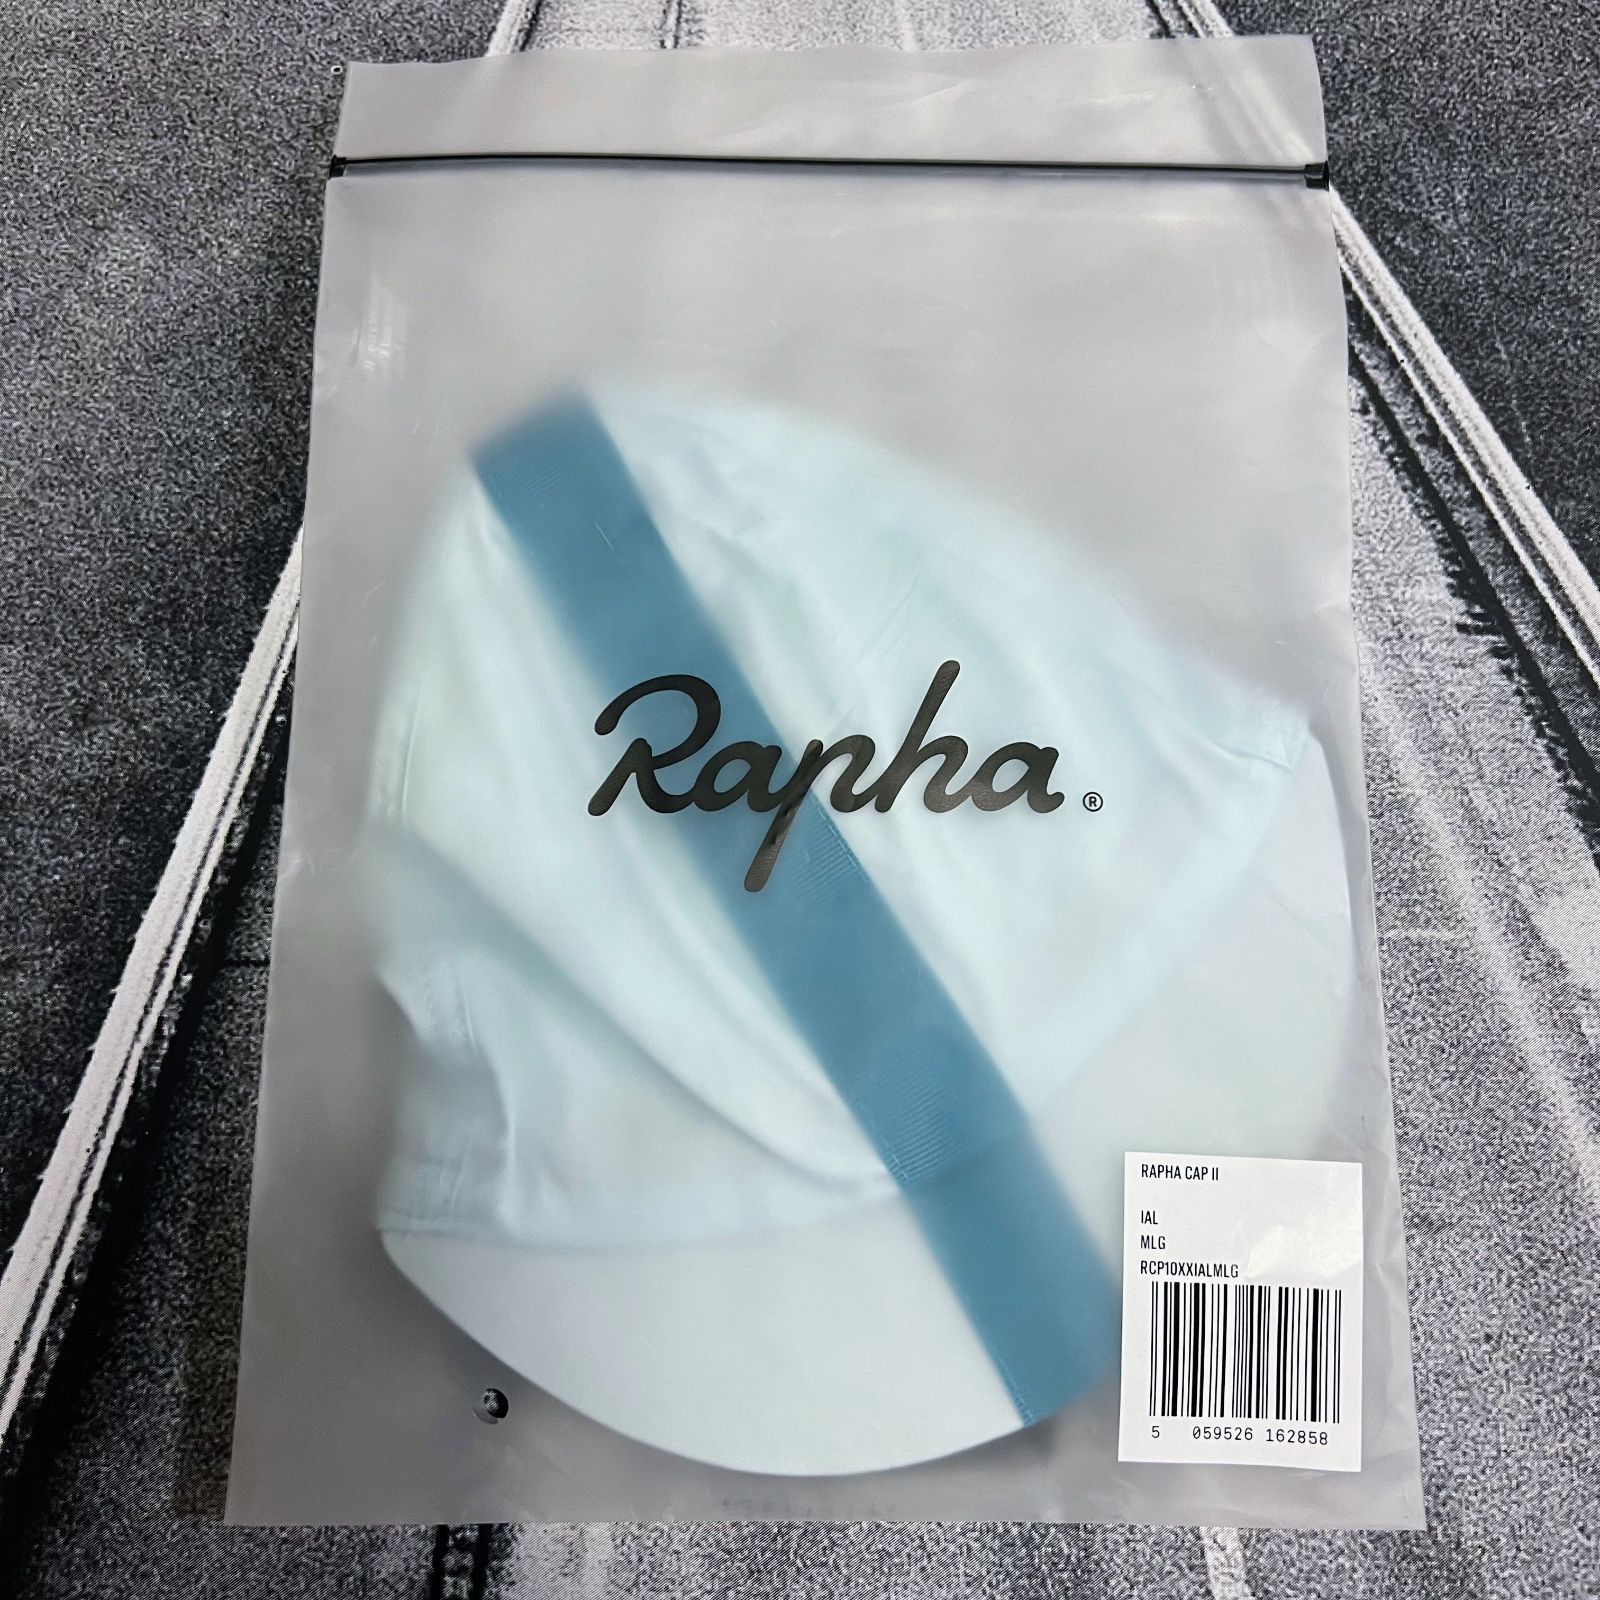 Rapha ラファ] Rapha Cap Ⅱ M/Lサイズ (JP 58〜64cm) ペールブルー/ティール ラファ キャップ 2 コットン製  RCP10XX - メルカリ